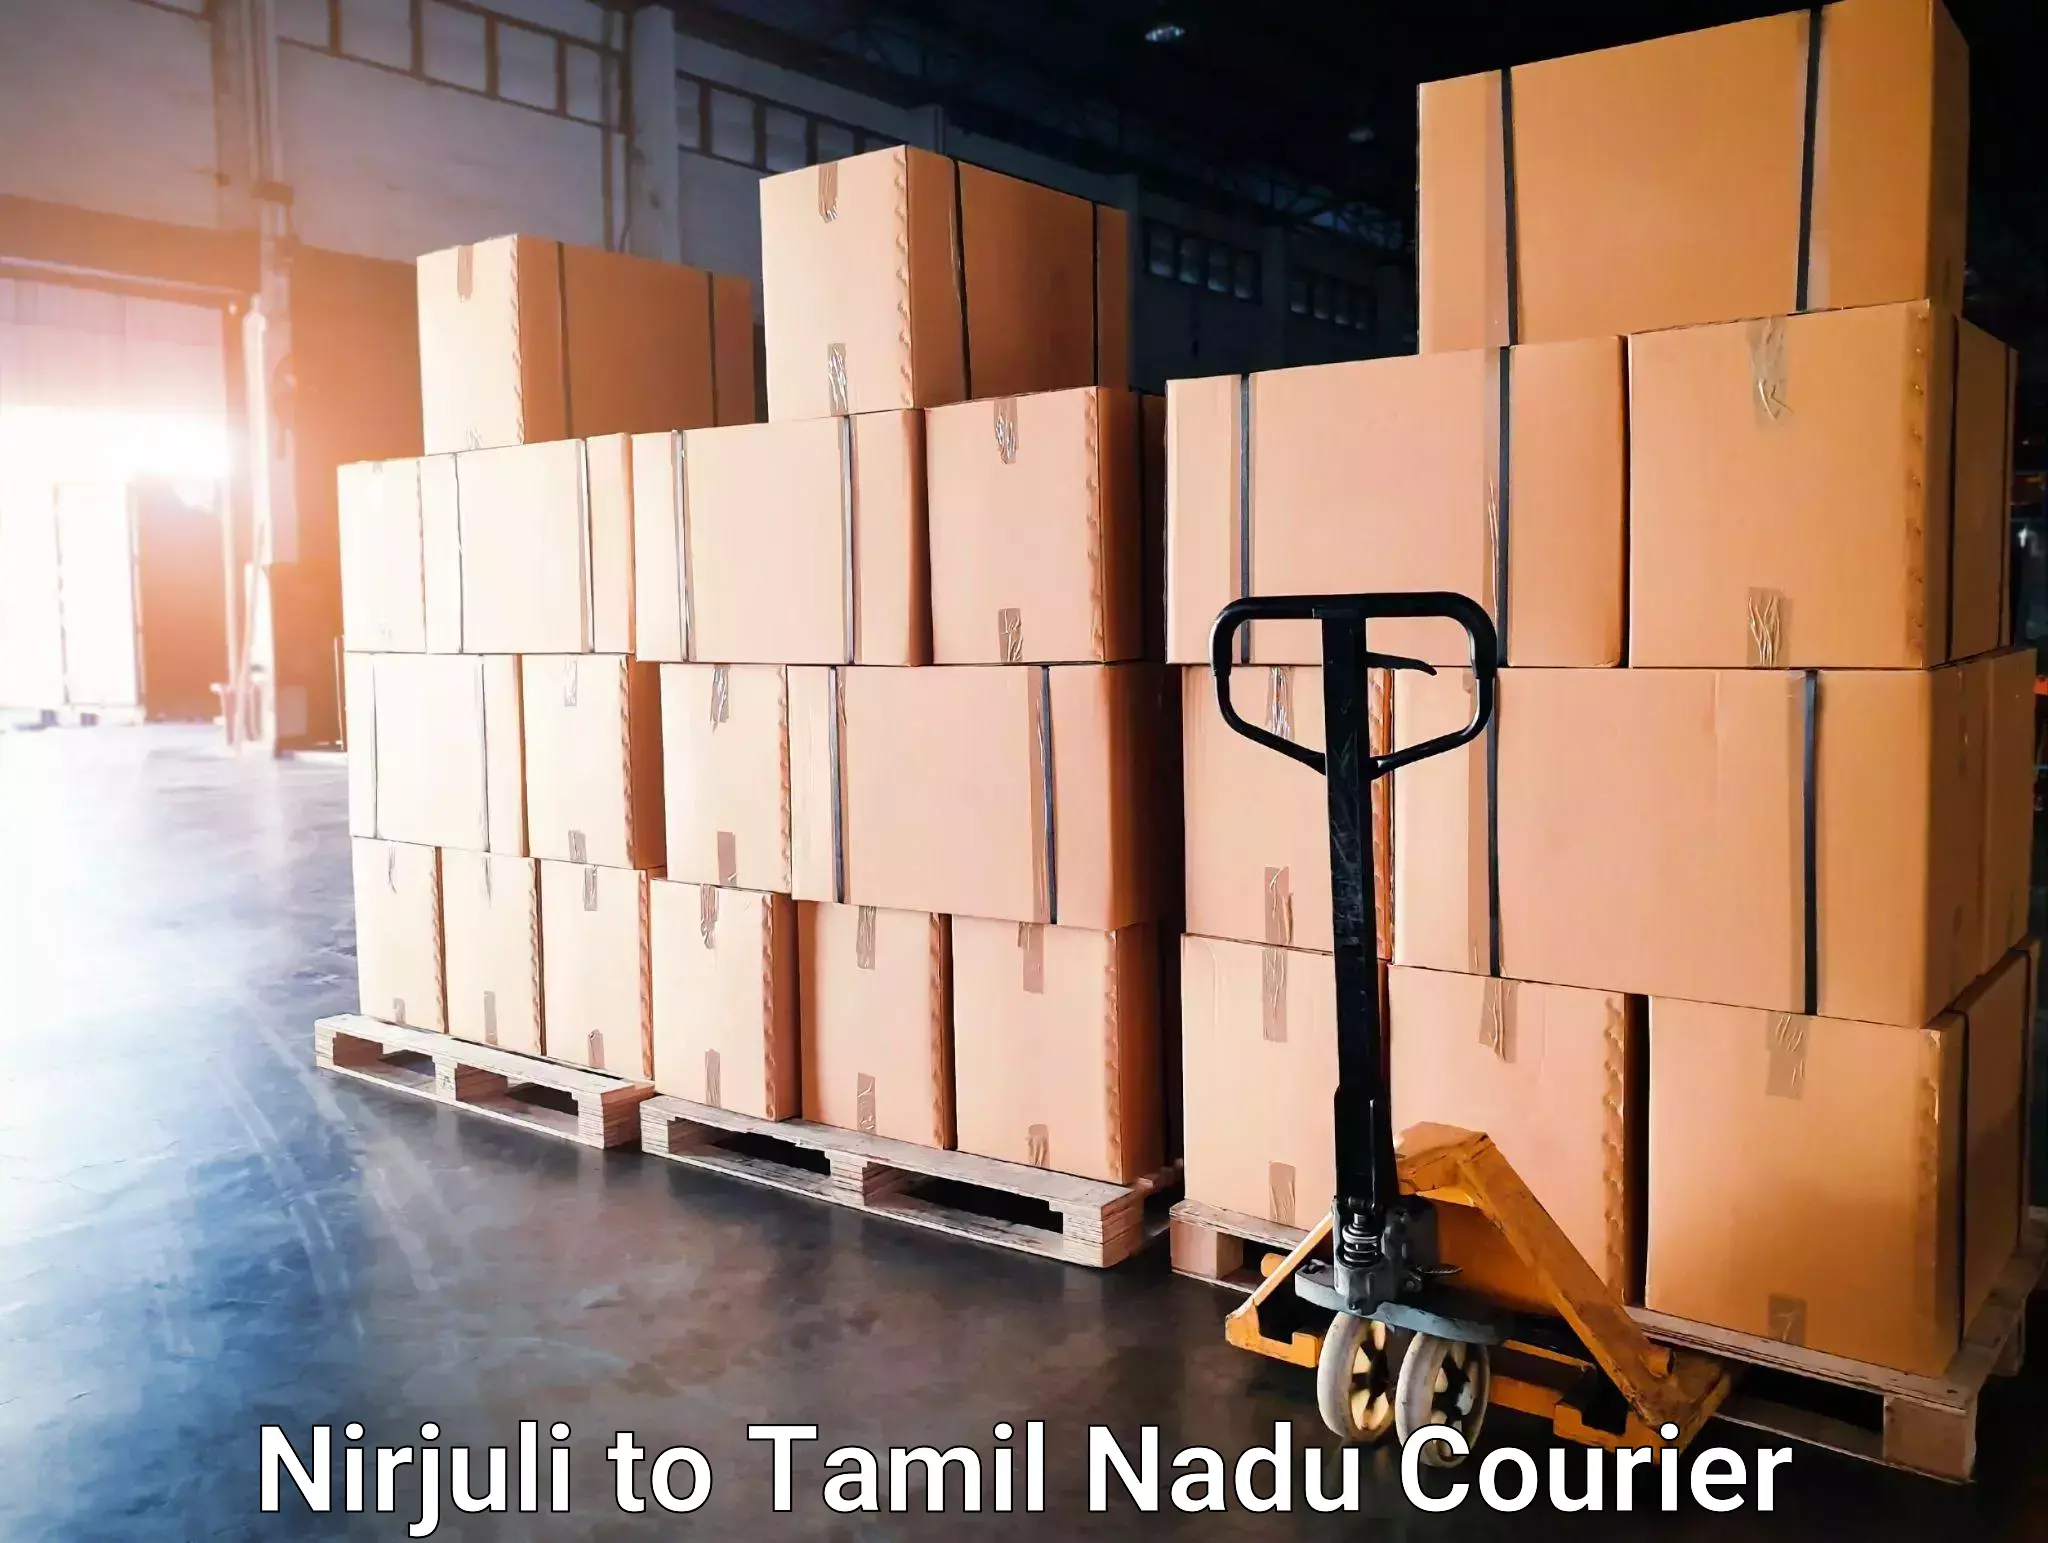 Advanced tracking systems Nirjuli to Tamil Nadu